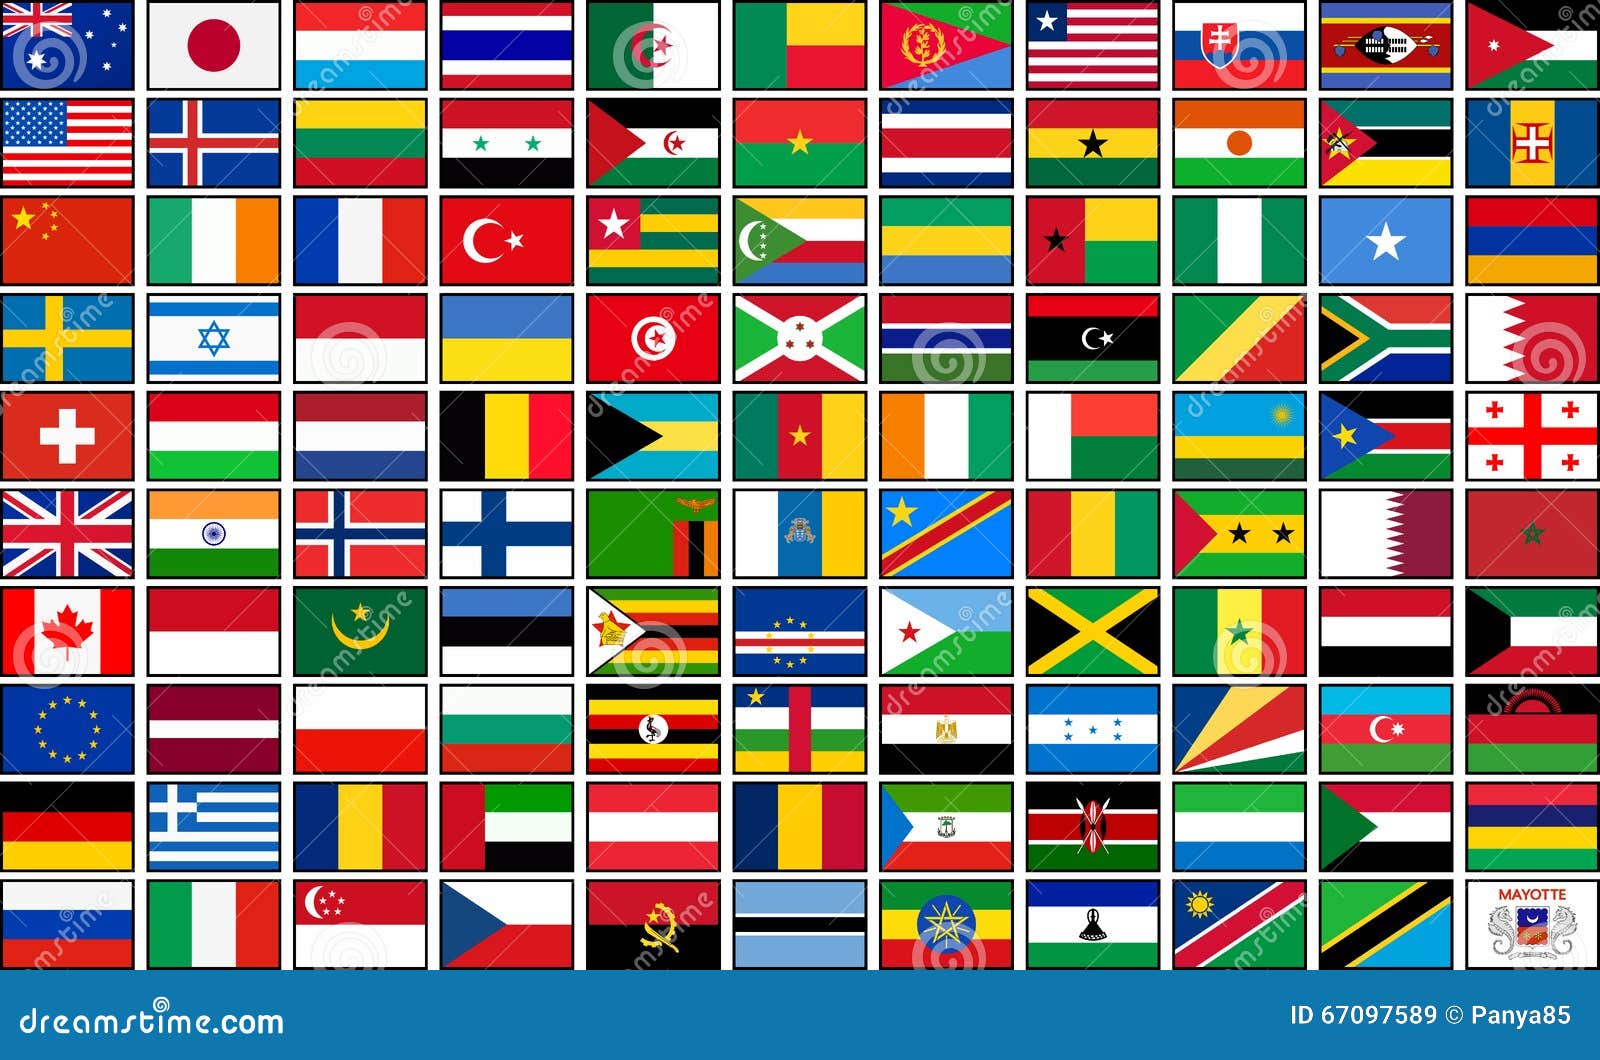 Флаг страны квадратной формы. Флаги стран с животными. Флаги стран ВТО. Флаг страны в форме квадрата. Флаги стран марабии.